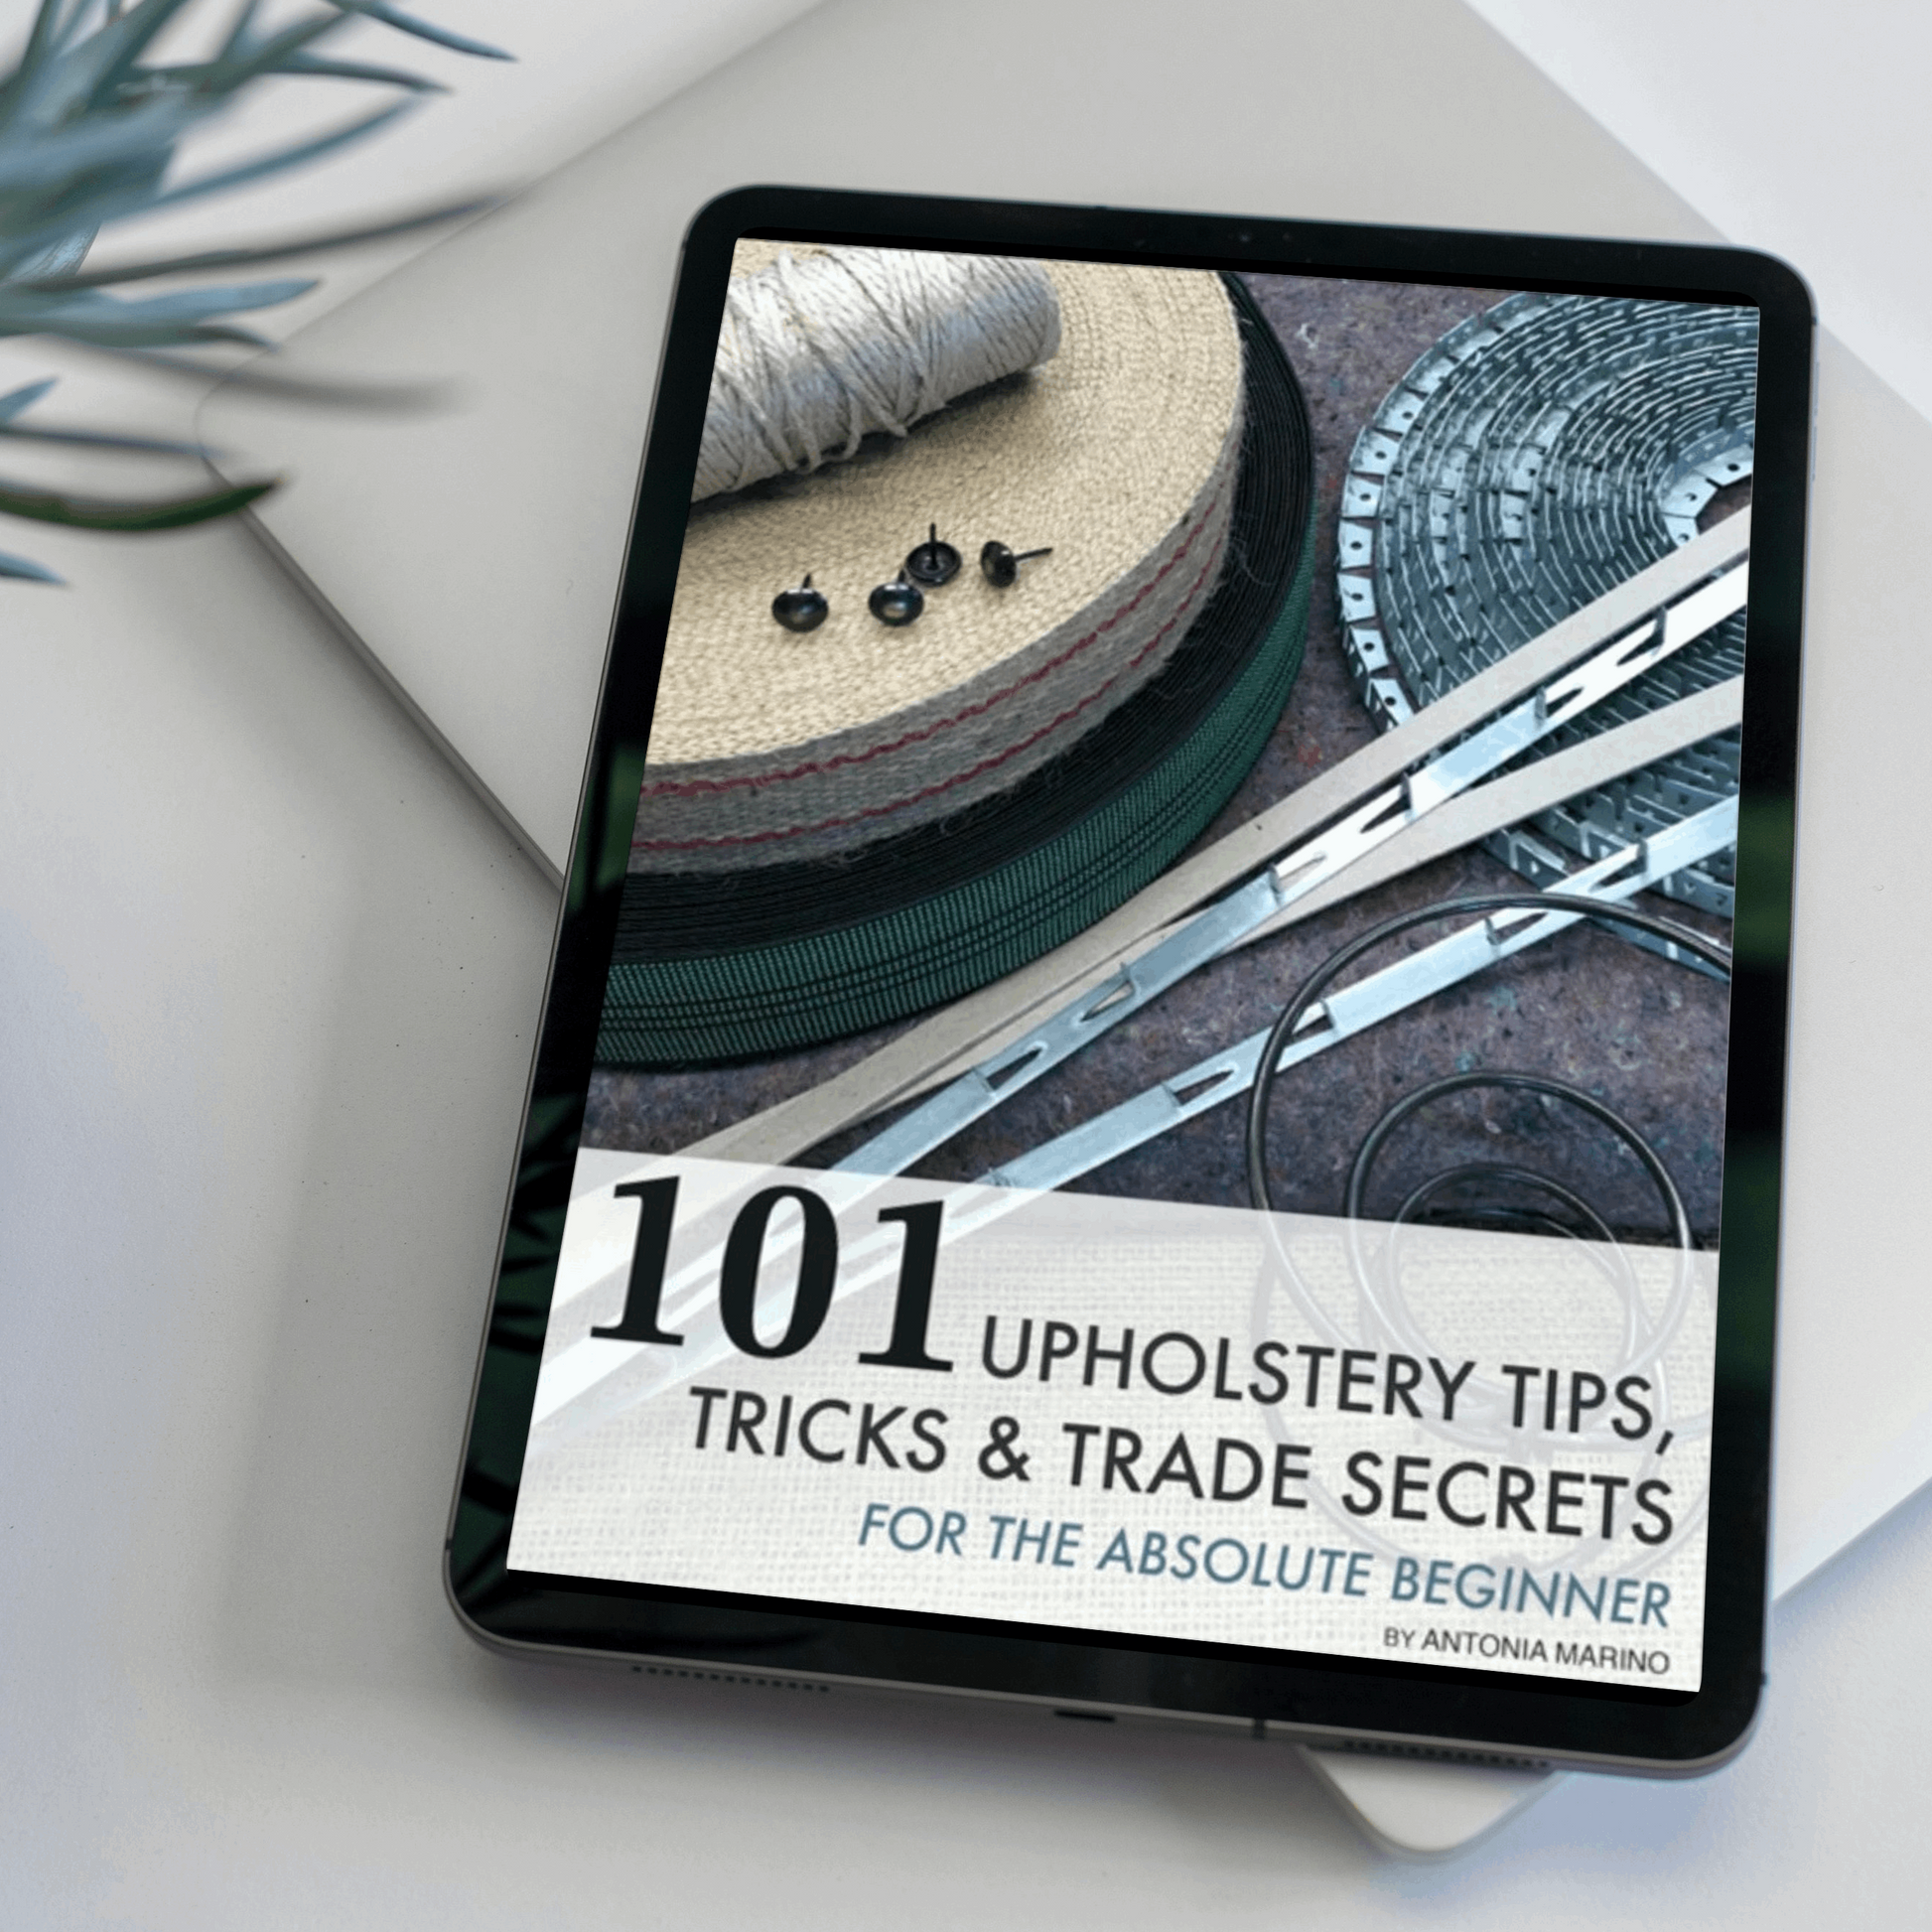 101 Upholstery Tips, Tricks & Trade Secrets